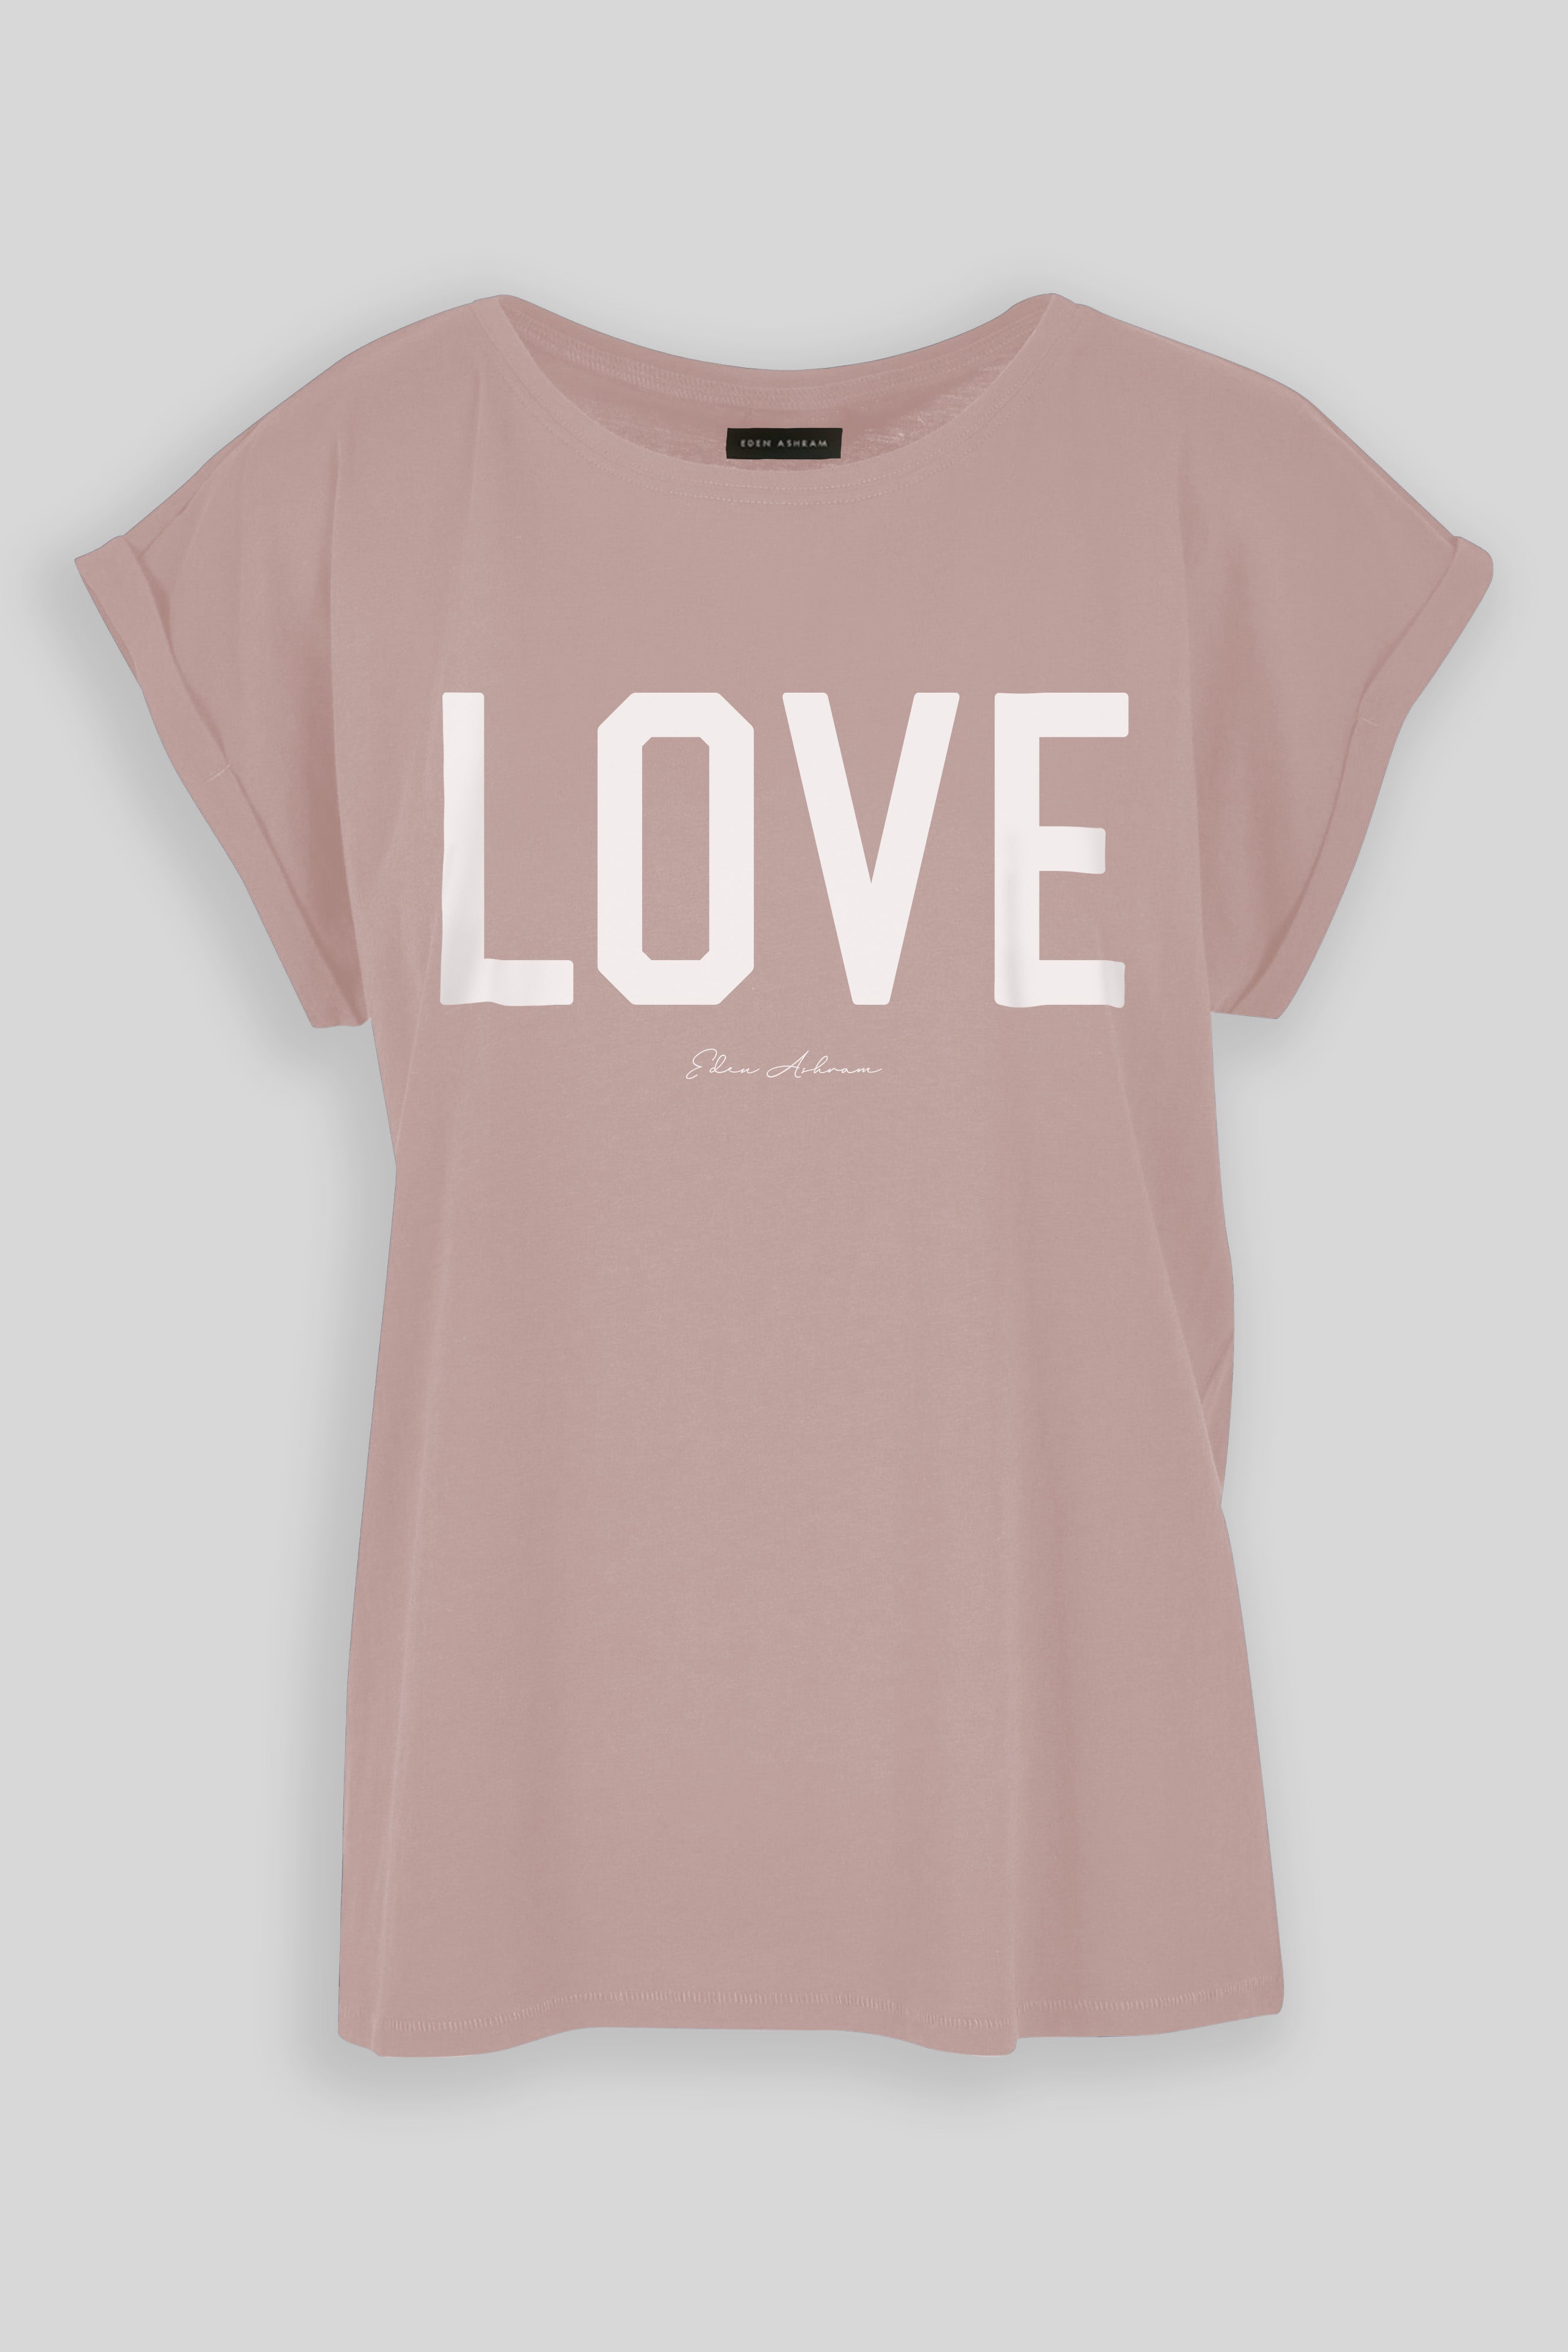 EDEN ASHRAM LOVE Cali T-Shirt Dusk Rose